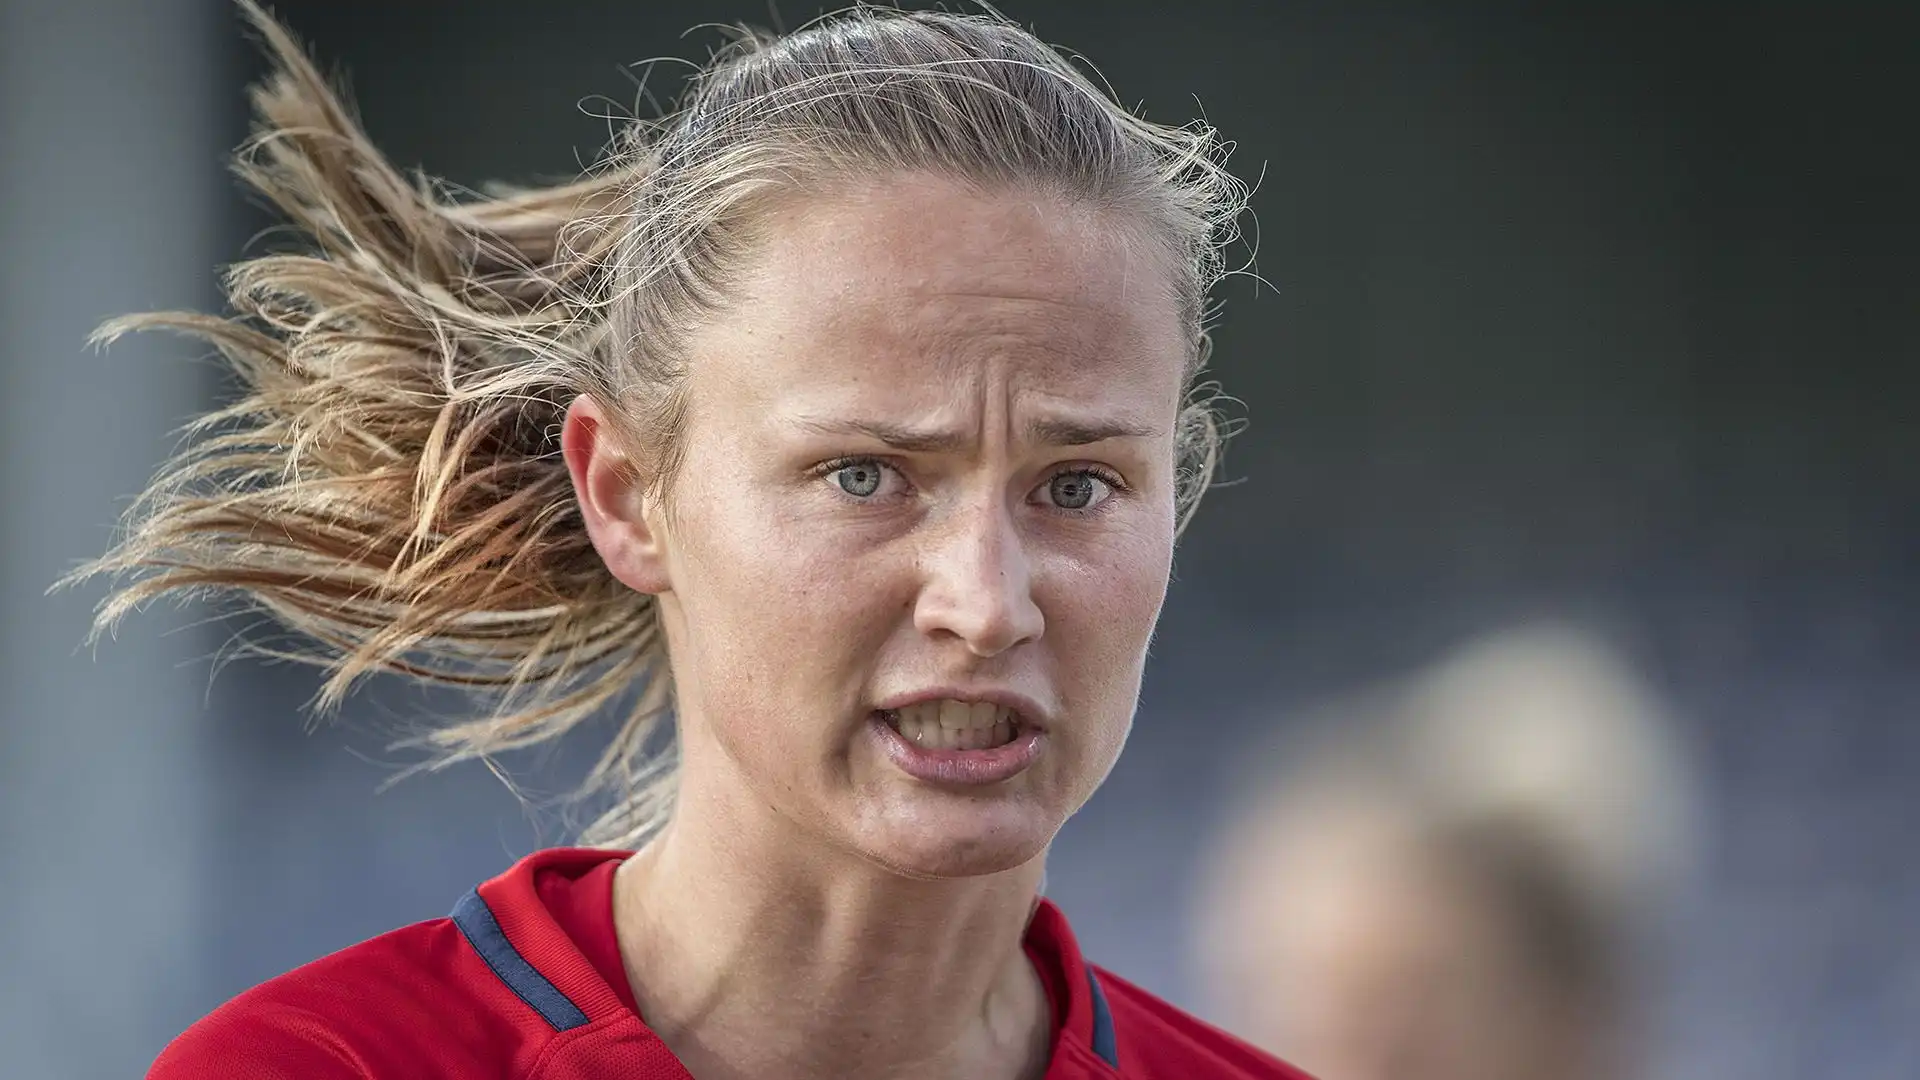 La Hansen gioca da oltre 10 anni nella nazionale maggiore norvegese